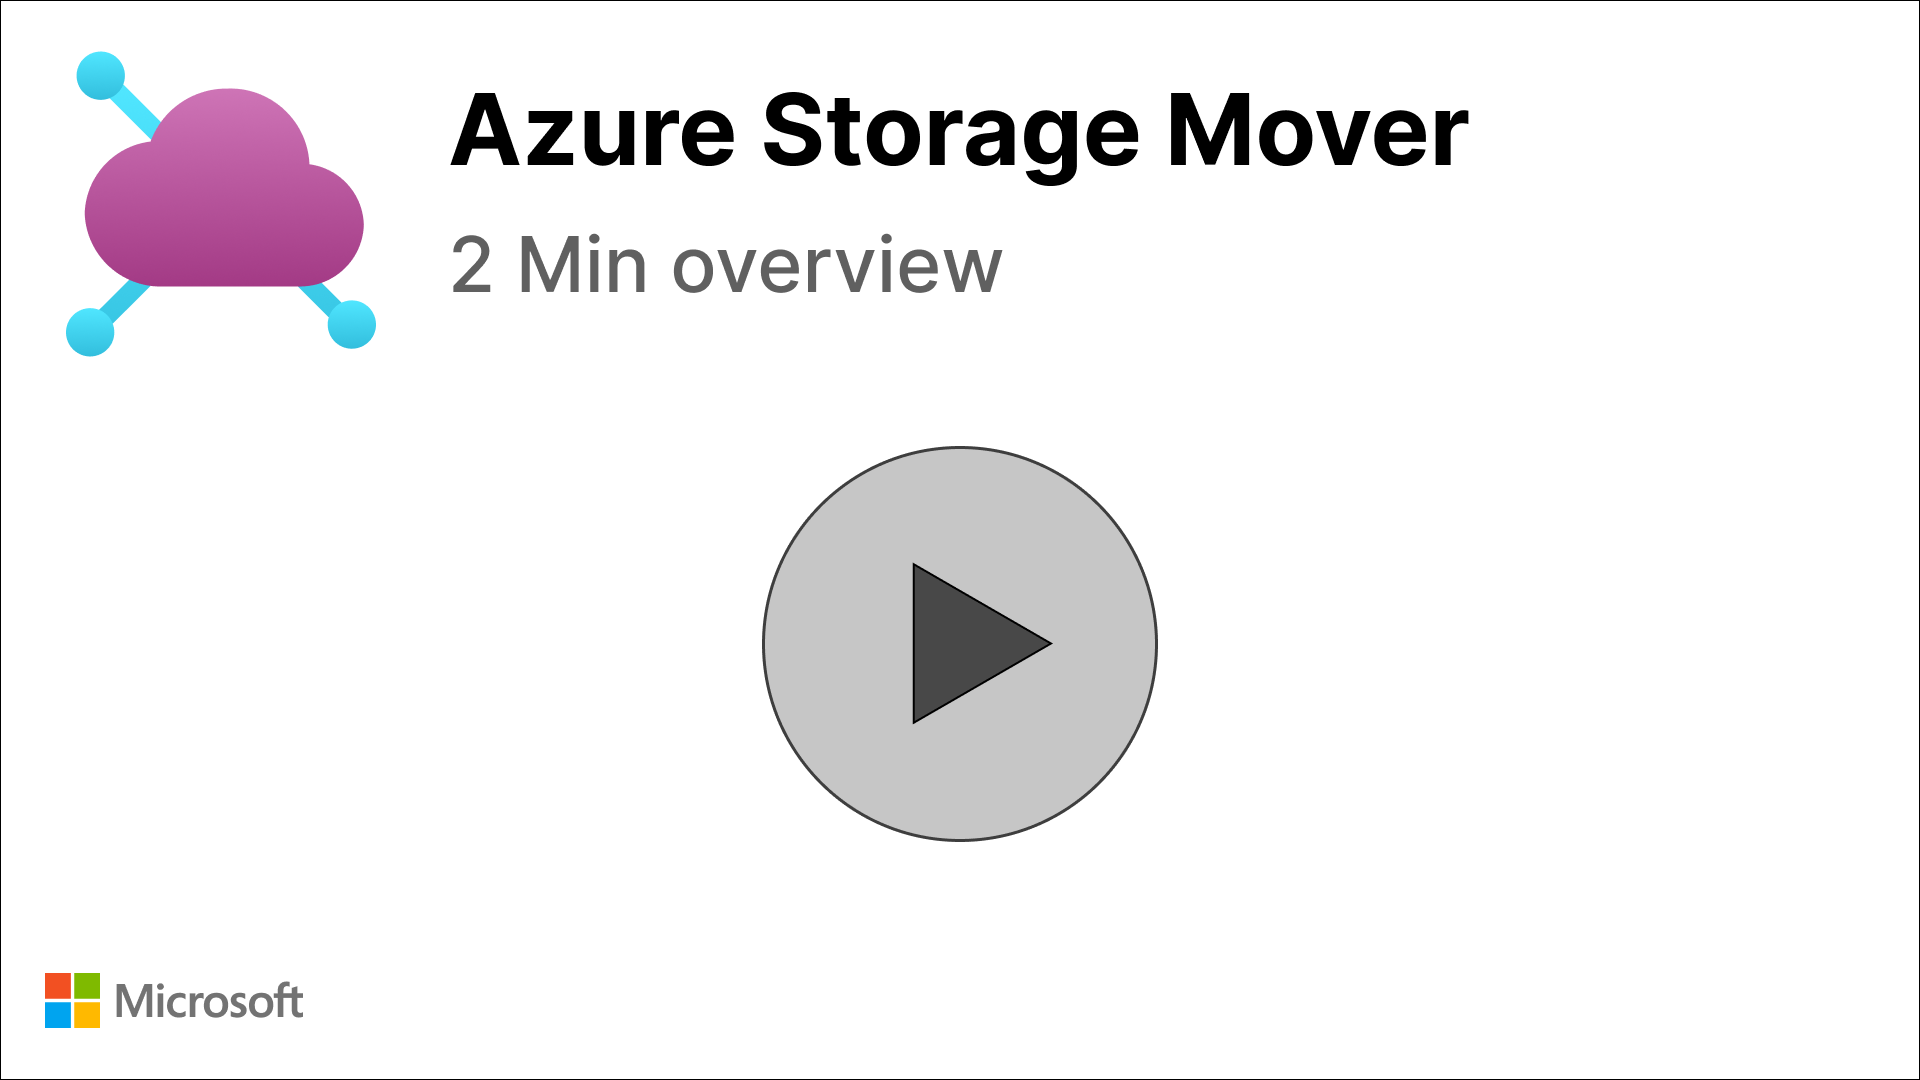 2-minütiges Demovideo zur Einführung in Azure Storage Mover – Zum Abspielen klicken!